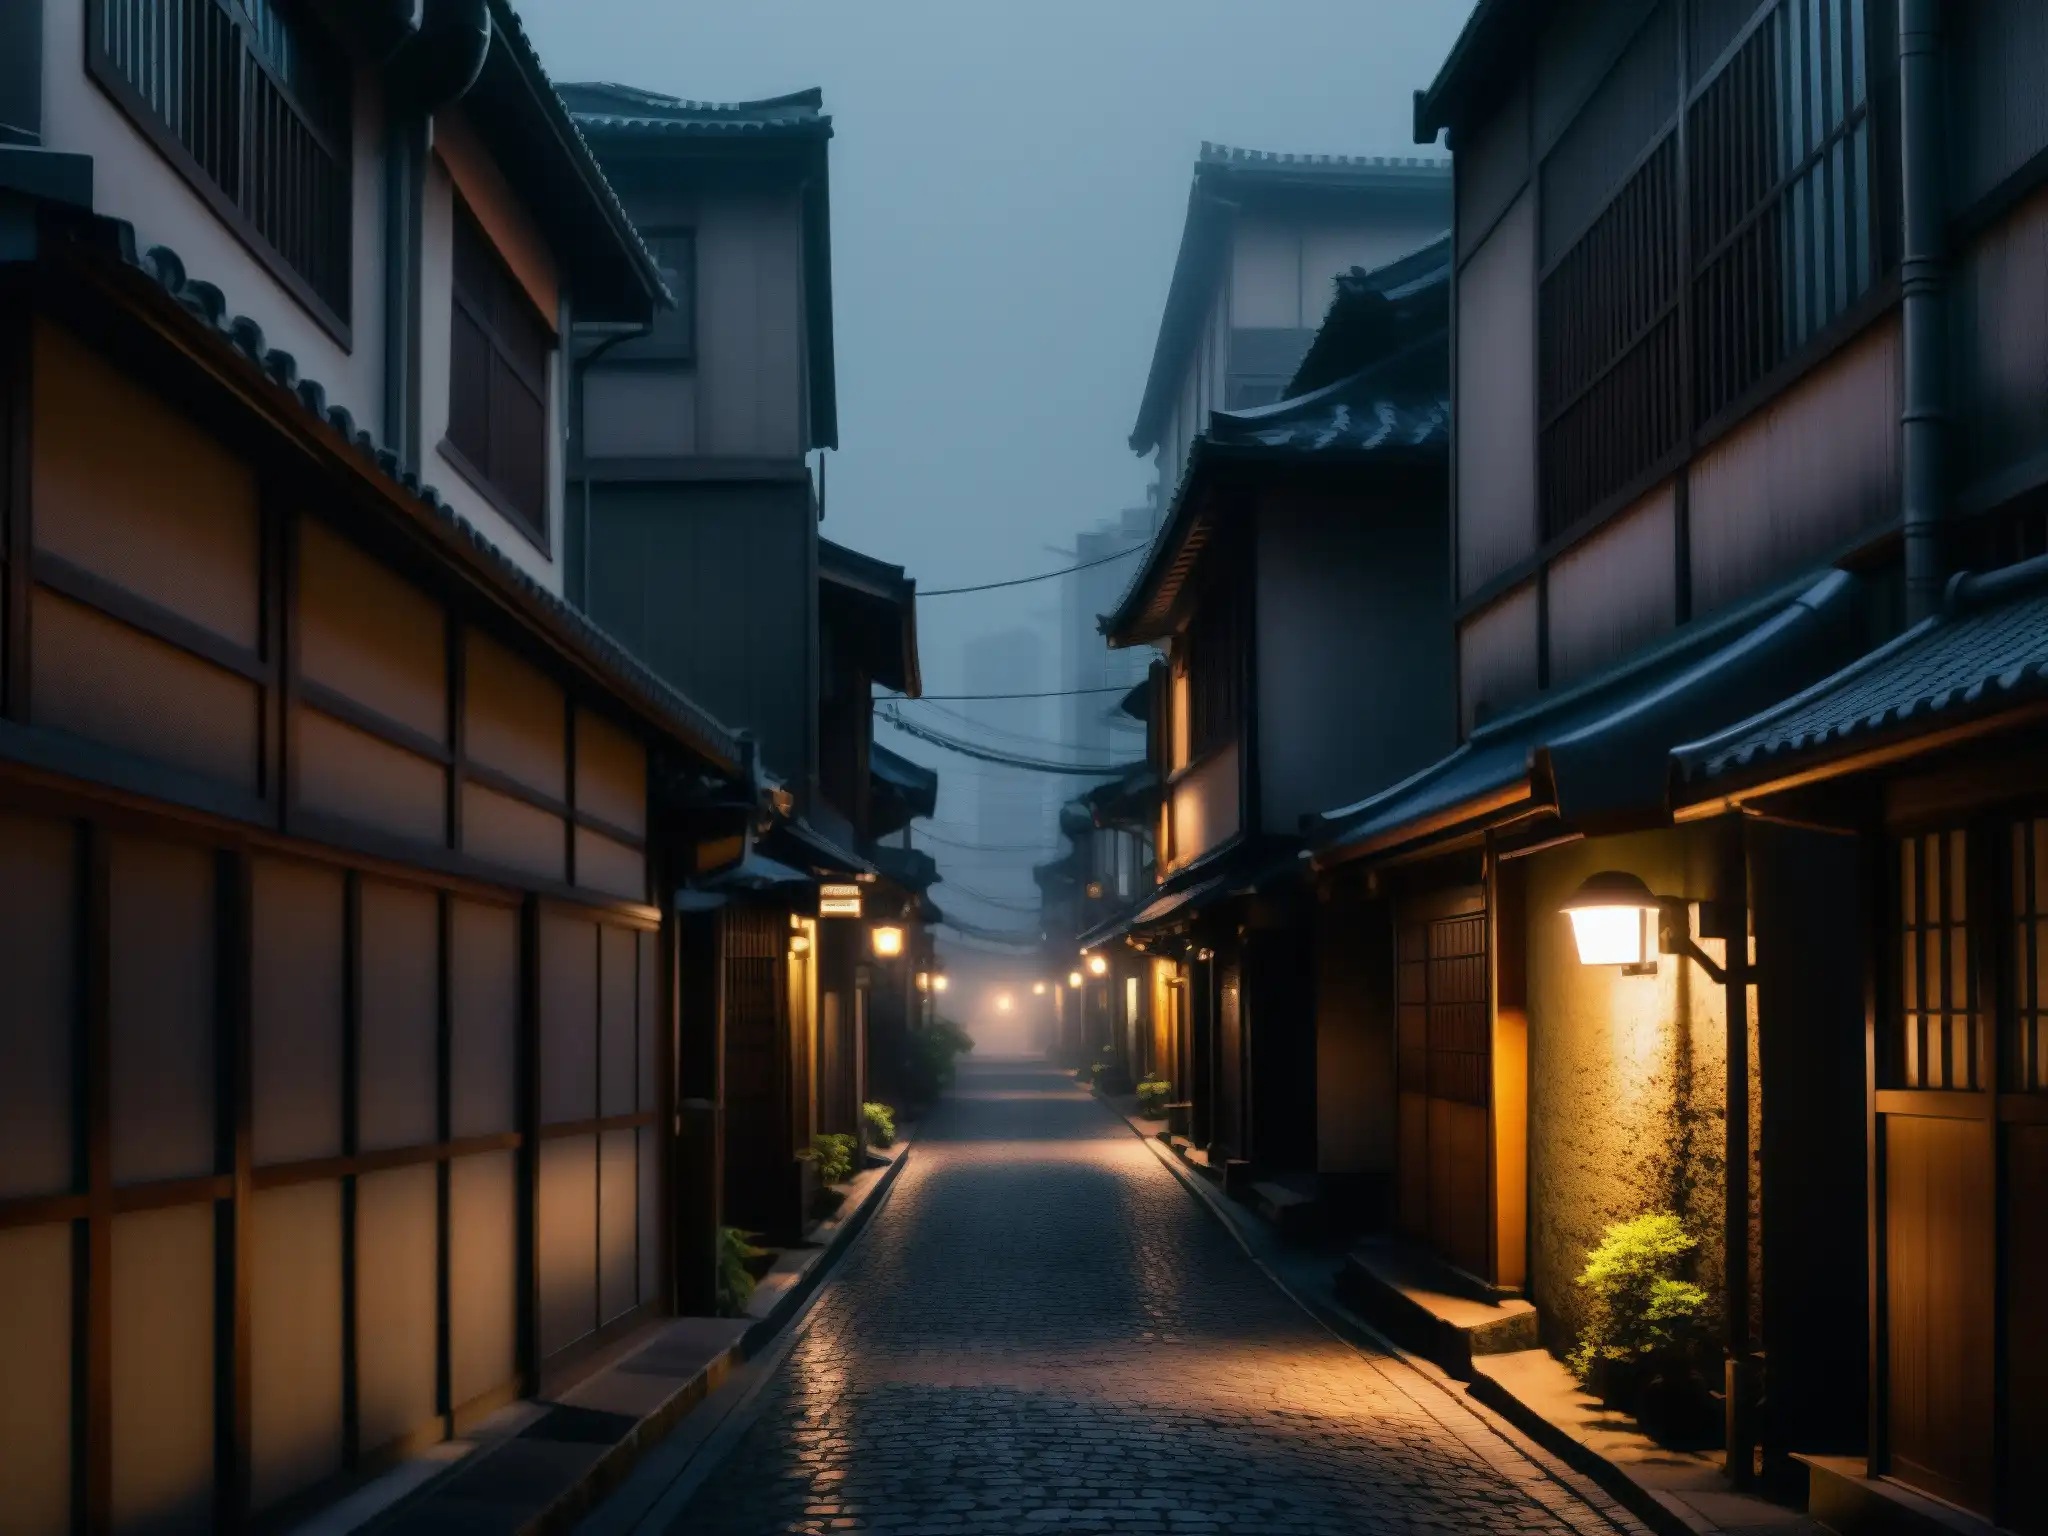 Revivir leyendas urbanas japonesas con smartphones: Un callejón sombrío en Tokyo con niebla y luces tenues crea una atmósfera inquietante